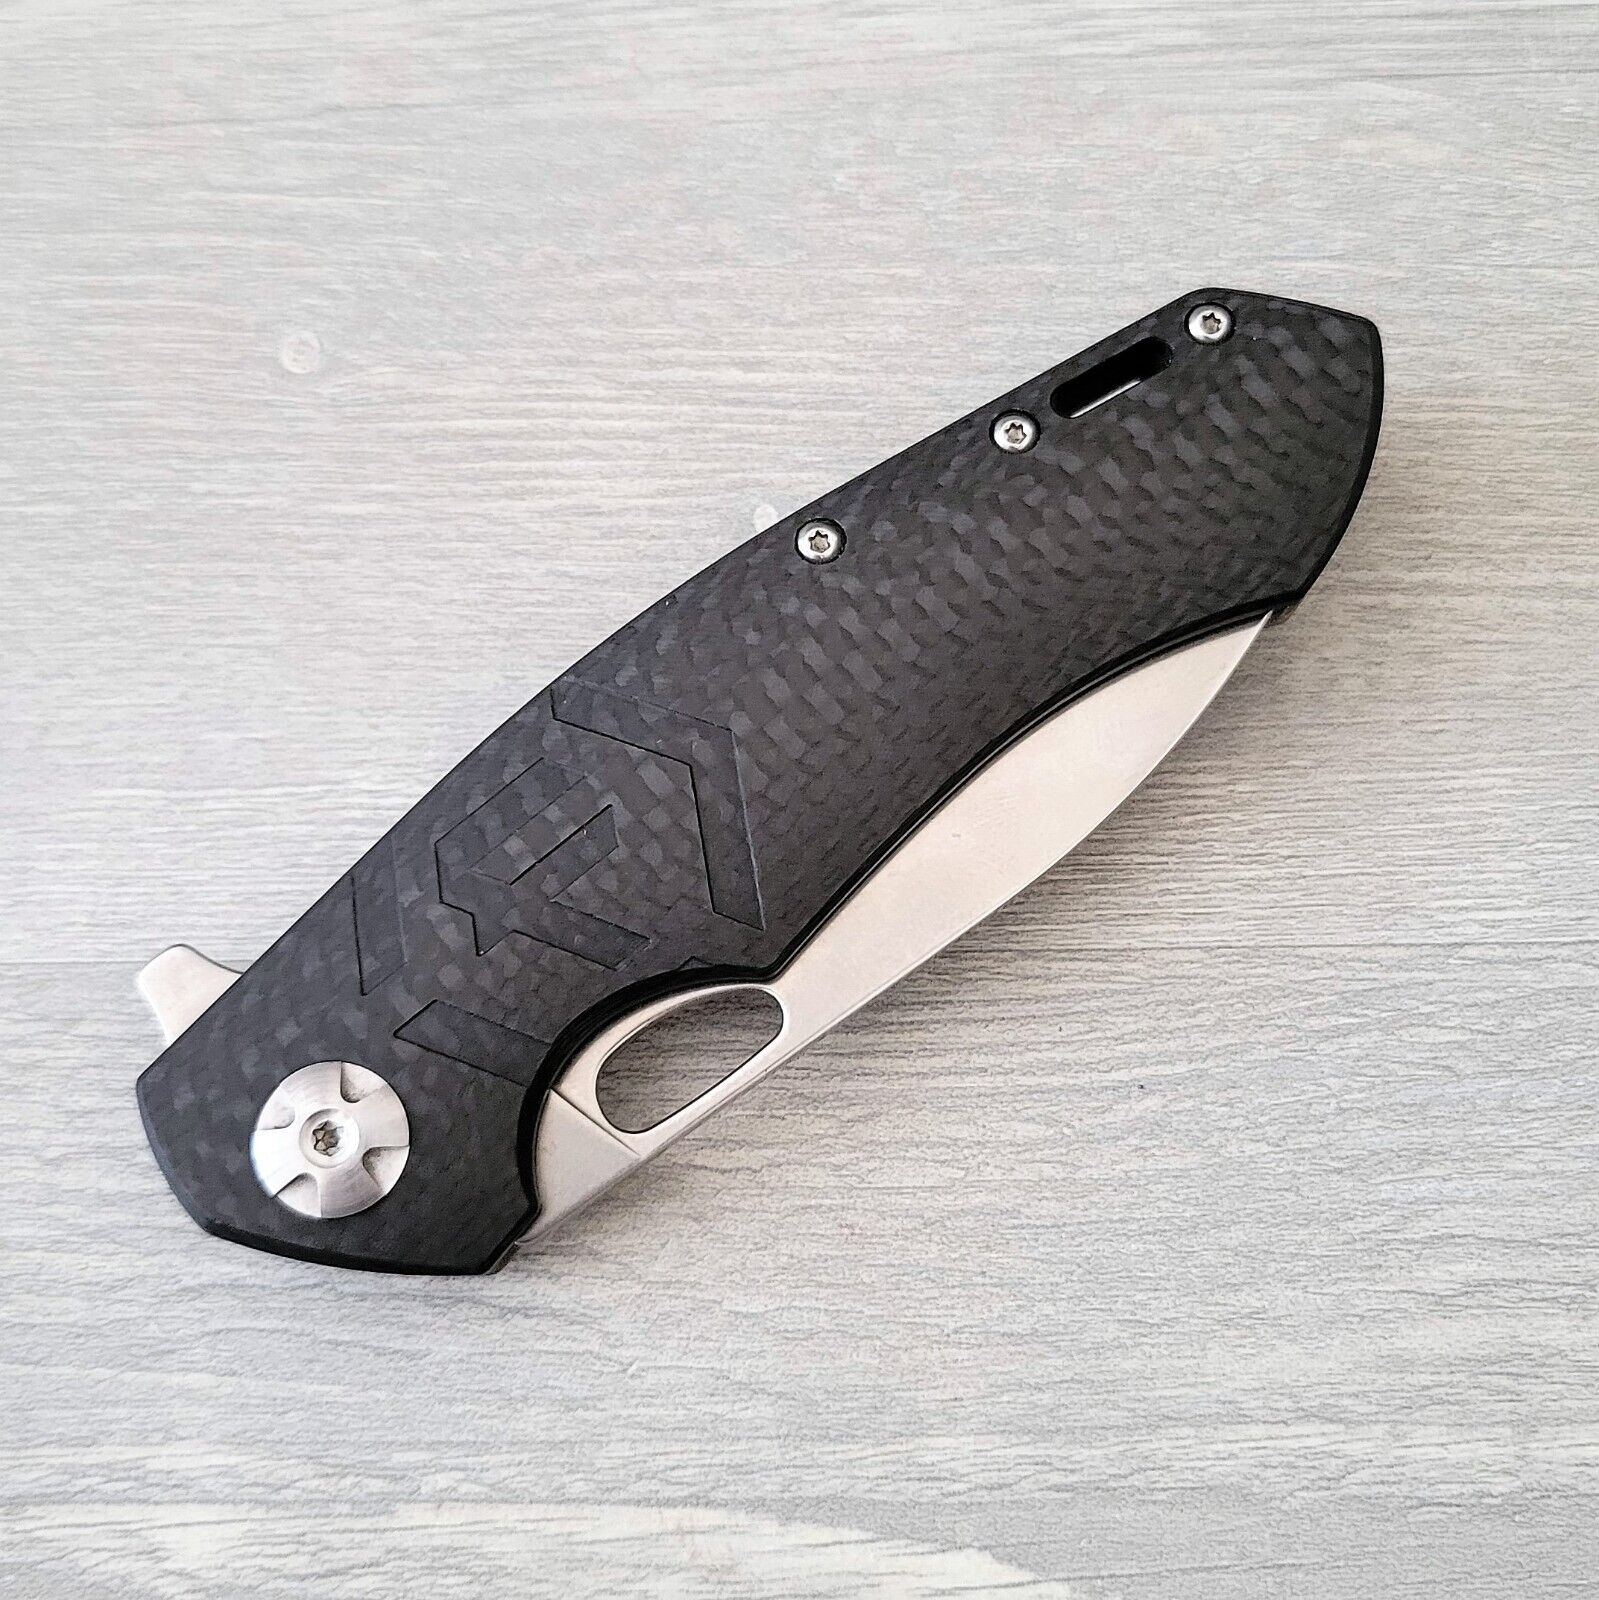 Factor Carbon Fiber Pocket Knife Frame Lock S35VN Blade VGUC